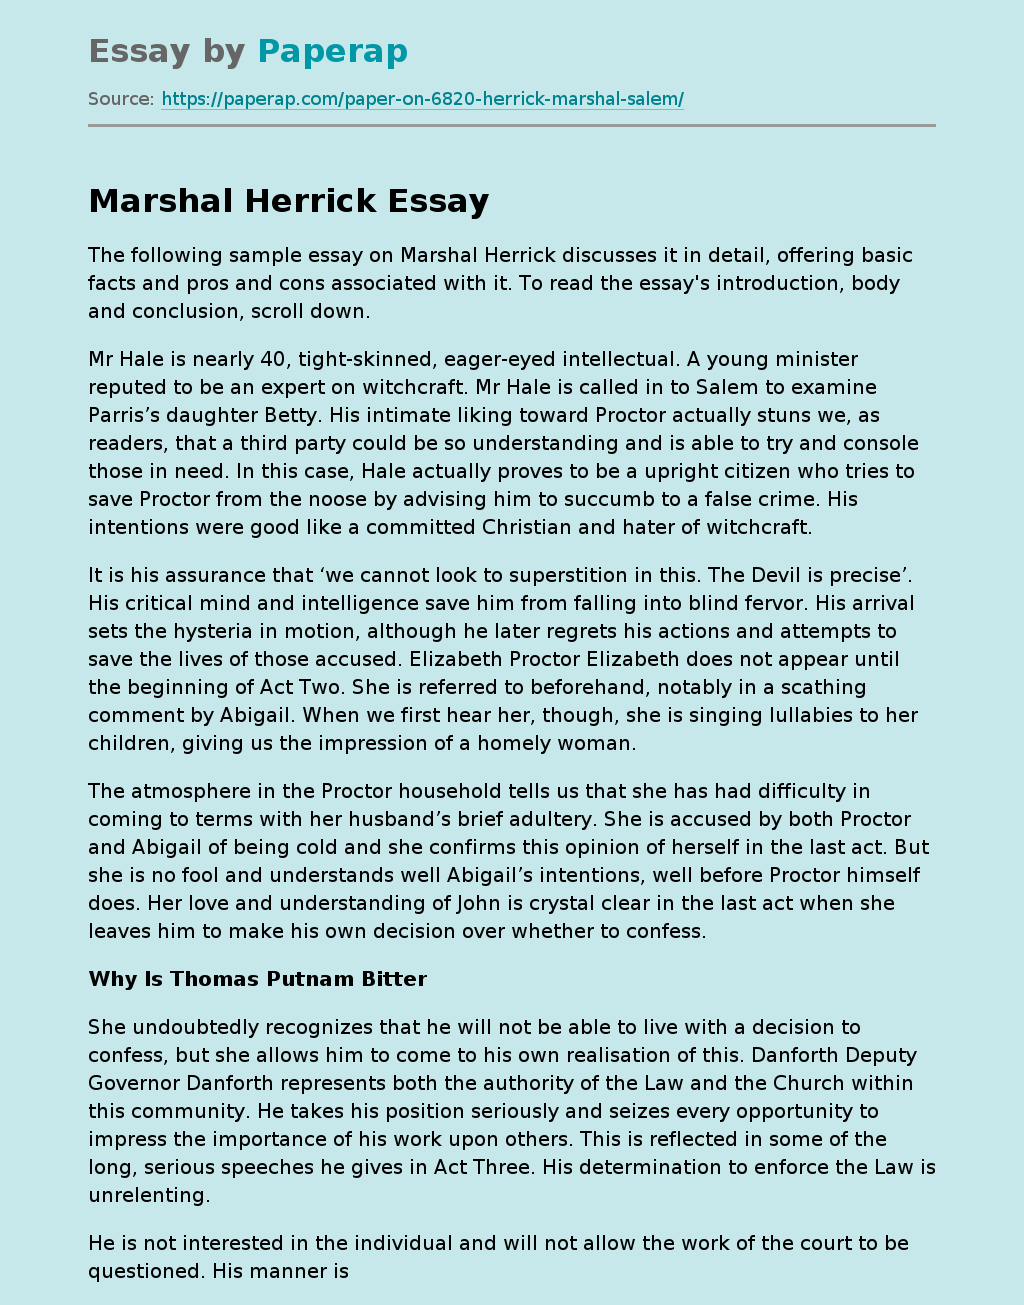 Marshal Herrick